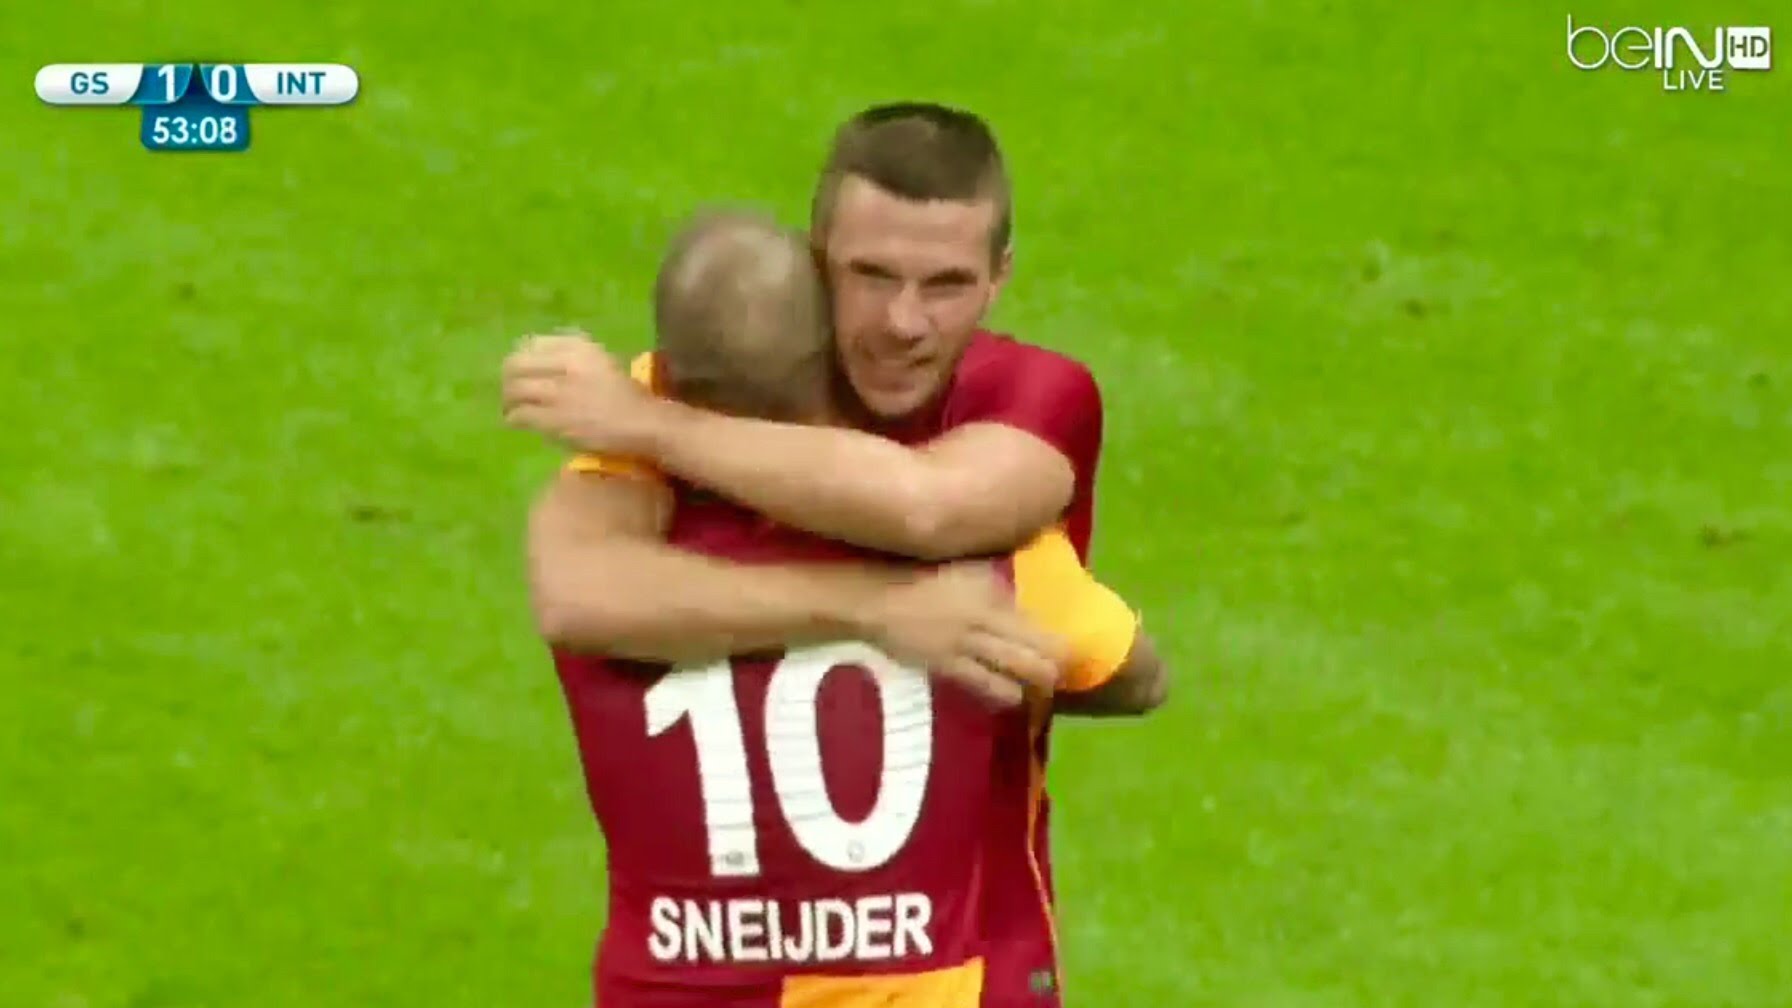 Galatasaray-Inter 1-0 (Sneijder): video gol e highlights